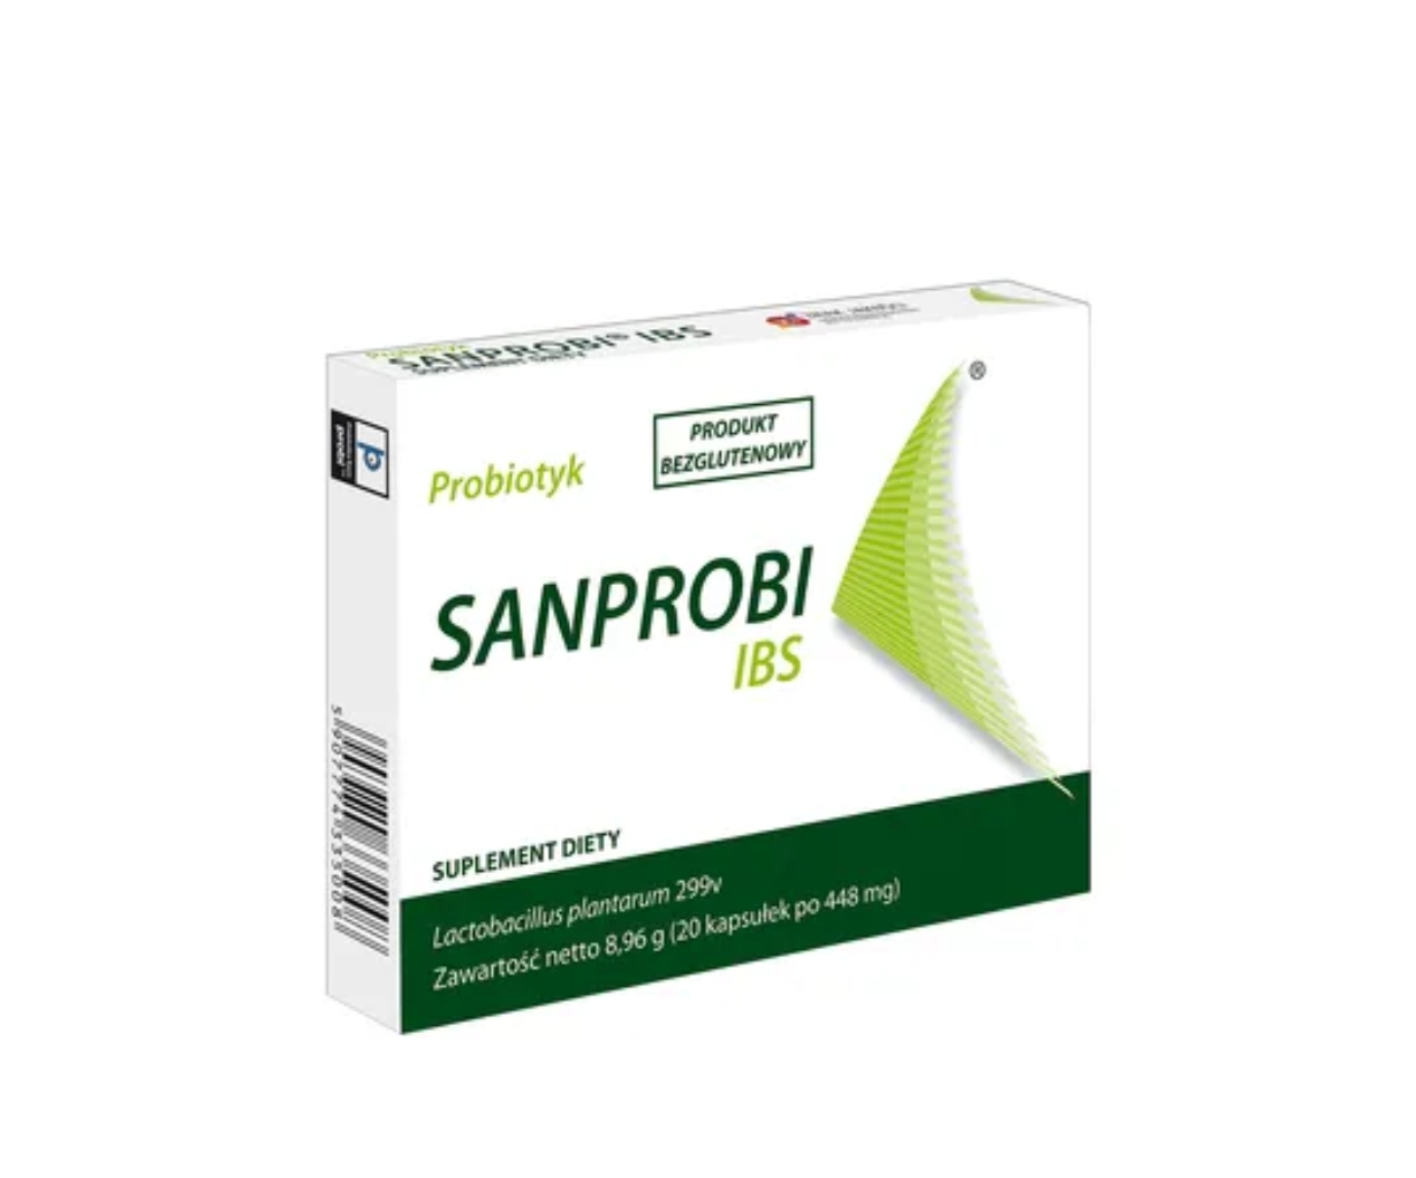 Sanprobi IBS, probiotyk suplement diety, osłona po antybiotyku